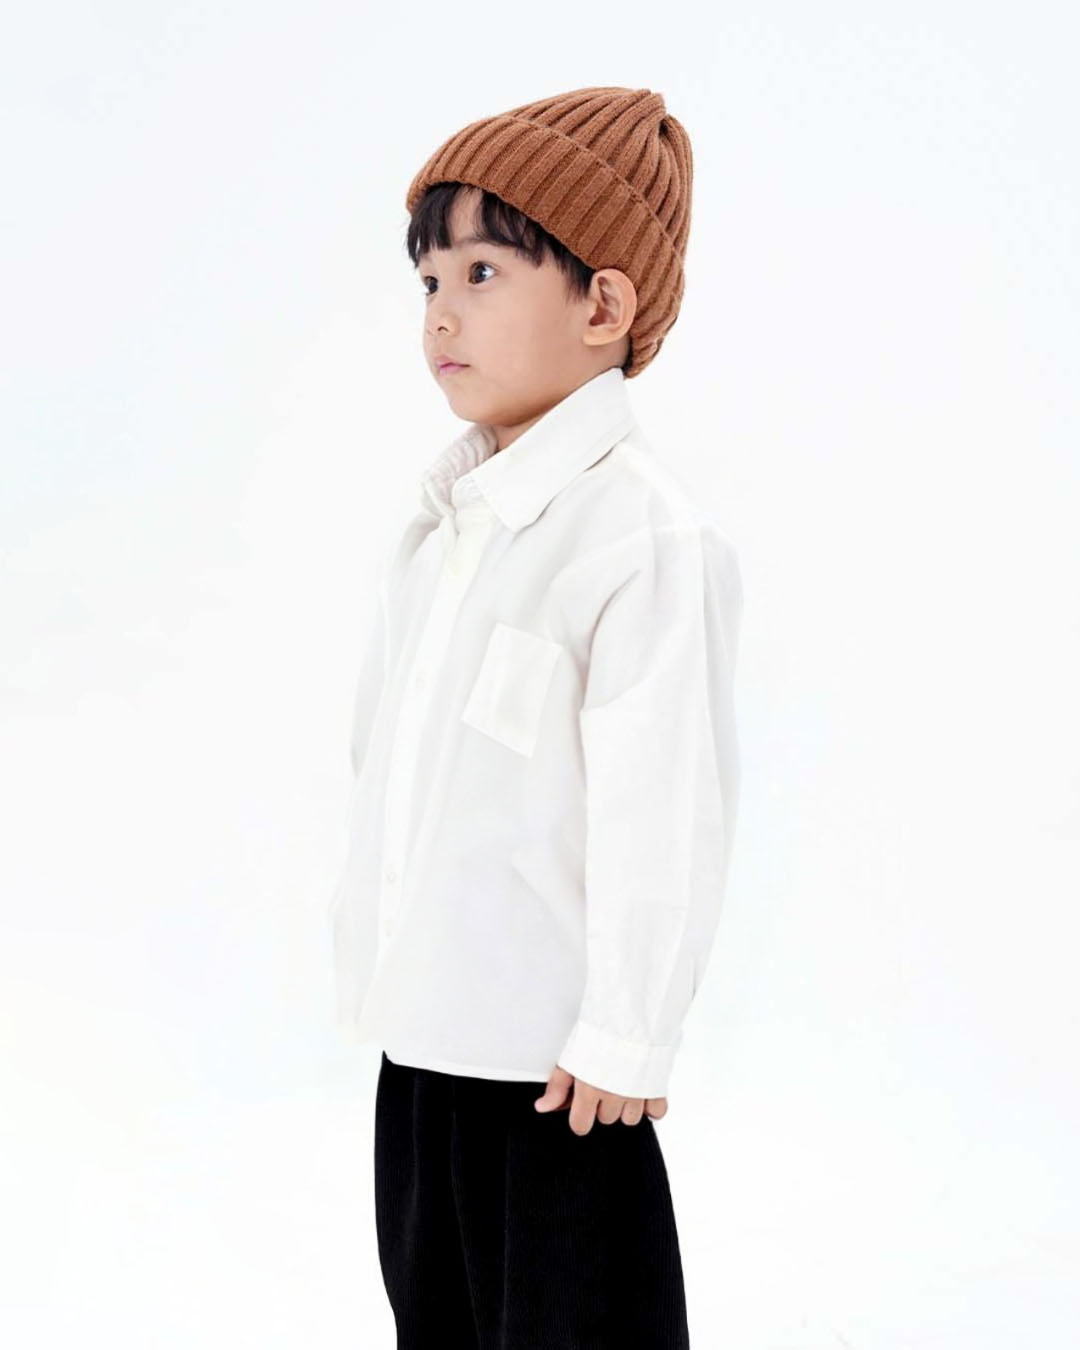 JOPI Kids' Urban-style Minimalist Shirt 2y-11y